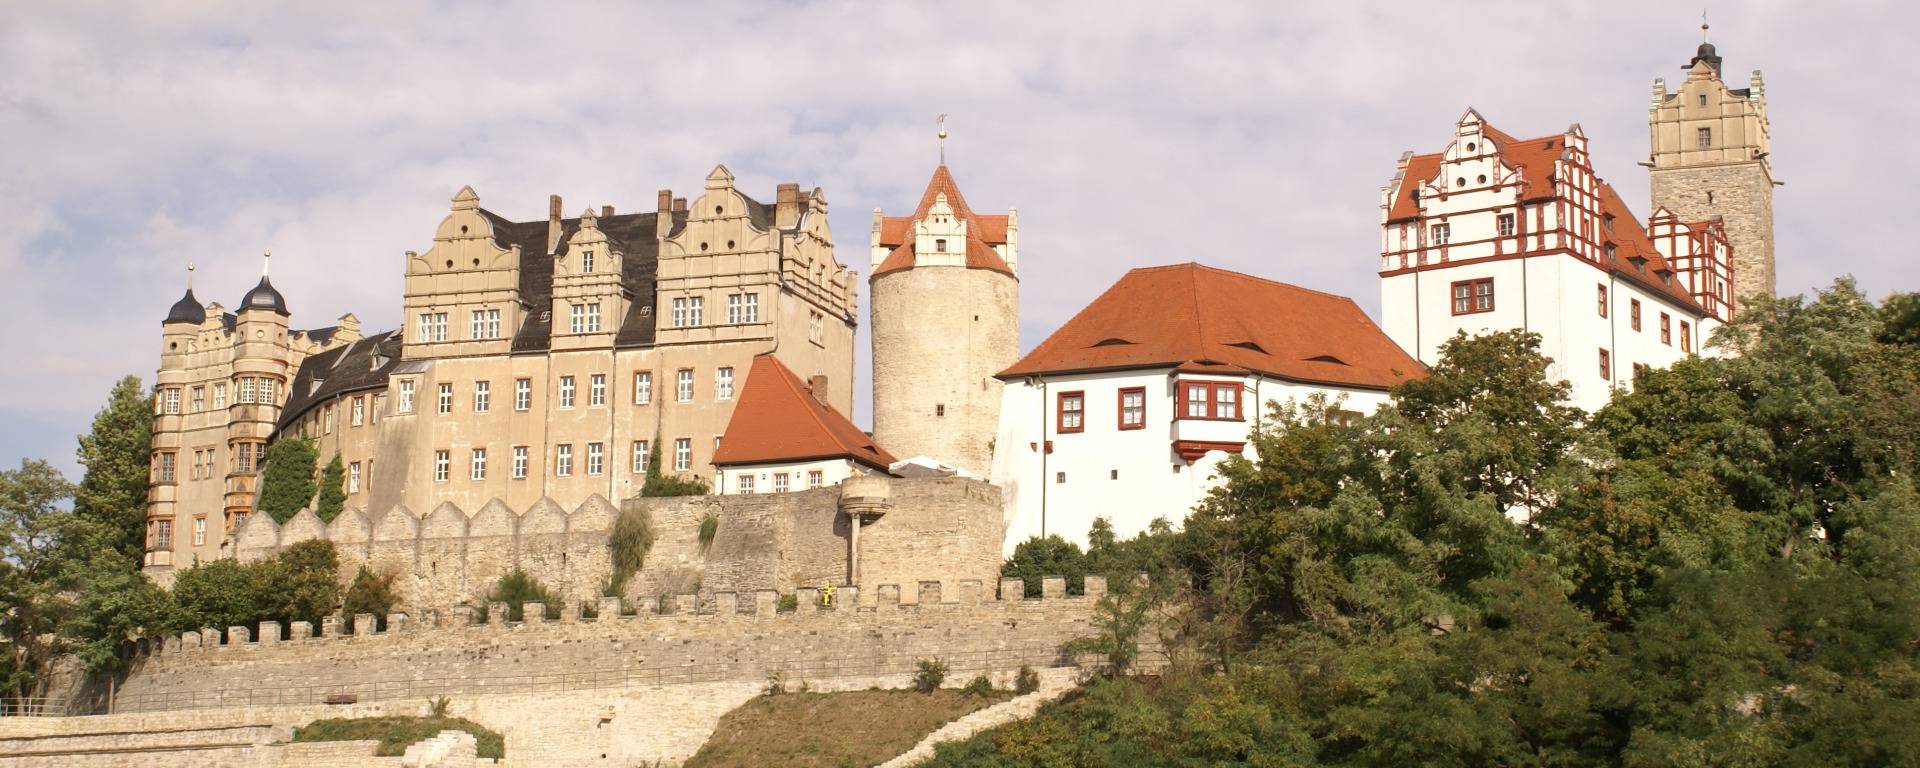 Bernburg Schloss